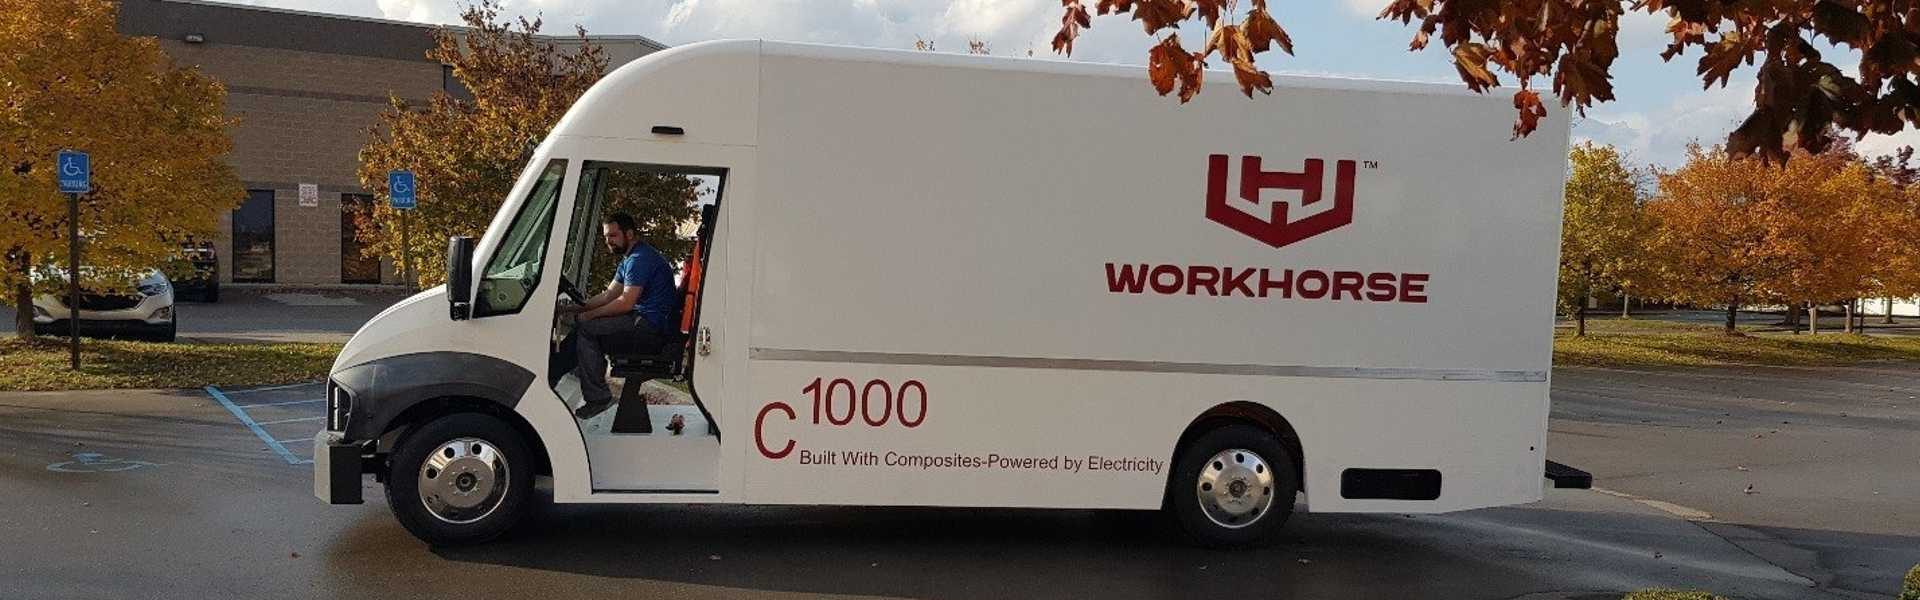 Workhorse C1000 camión de reparto eléctrico